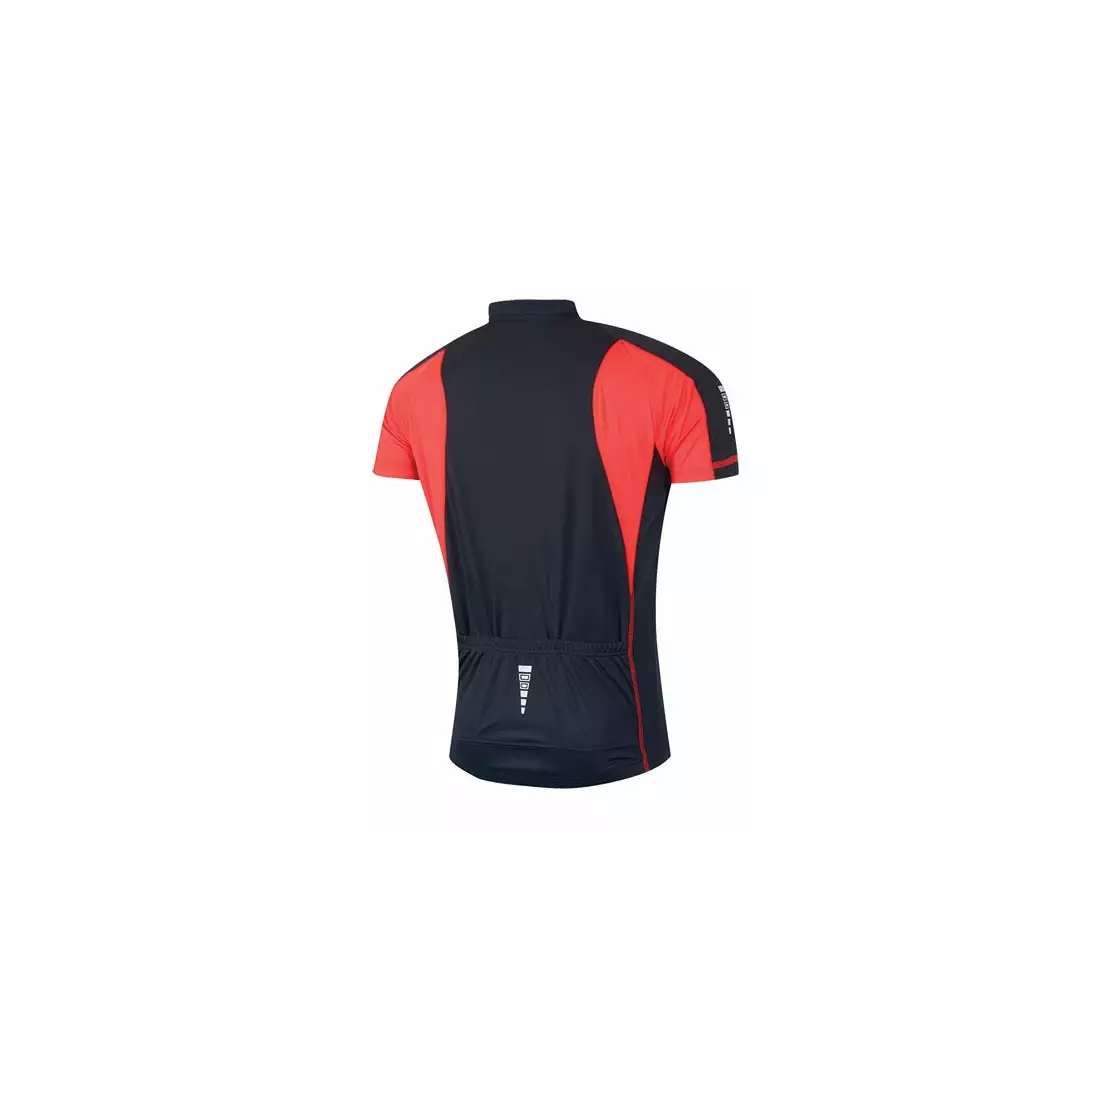 FORCE T10 cyklistický dres, černý a červený 900102